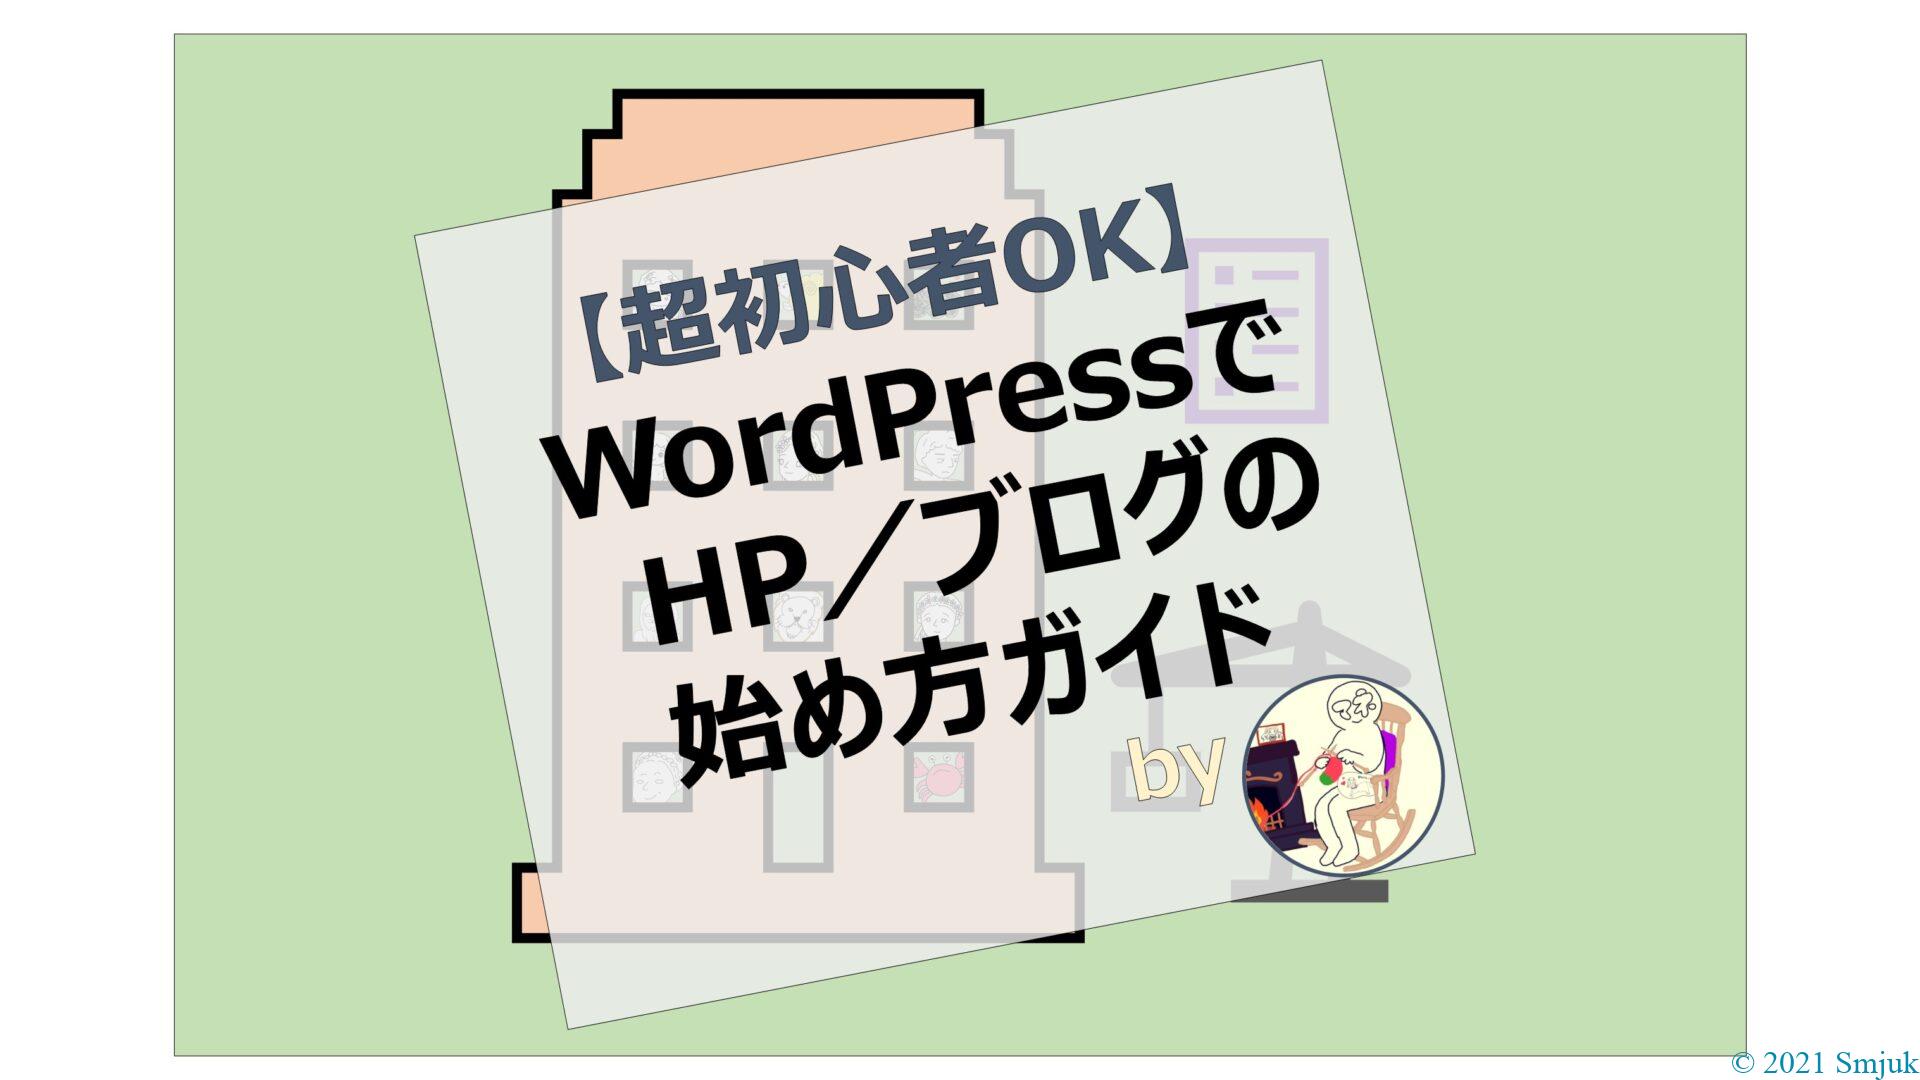 【超初心者OK】WordPressでのHP／ブログの始め方ガイド【完全無料】